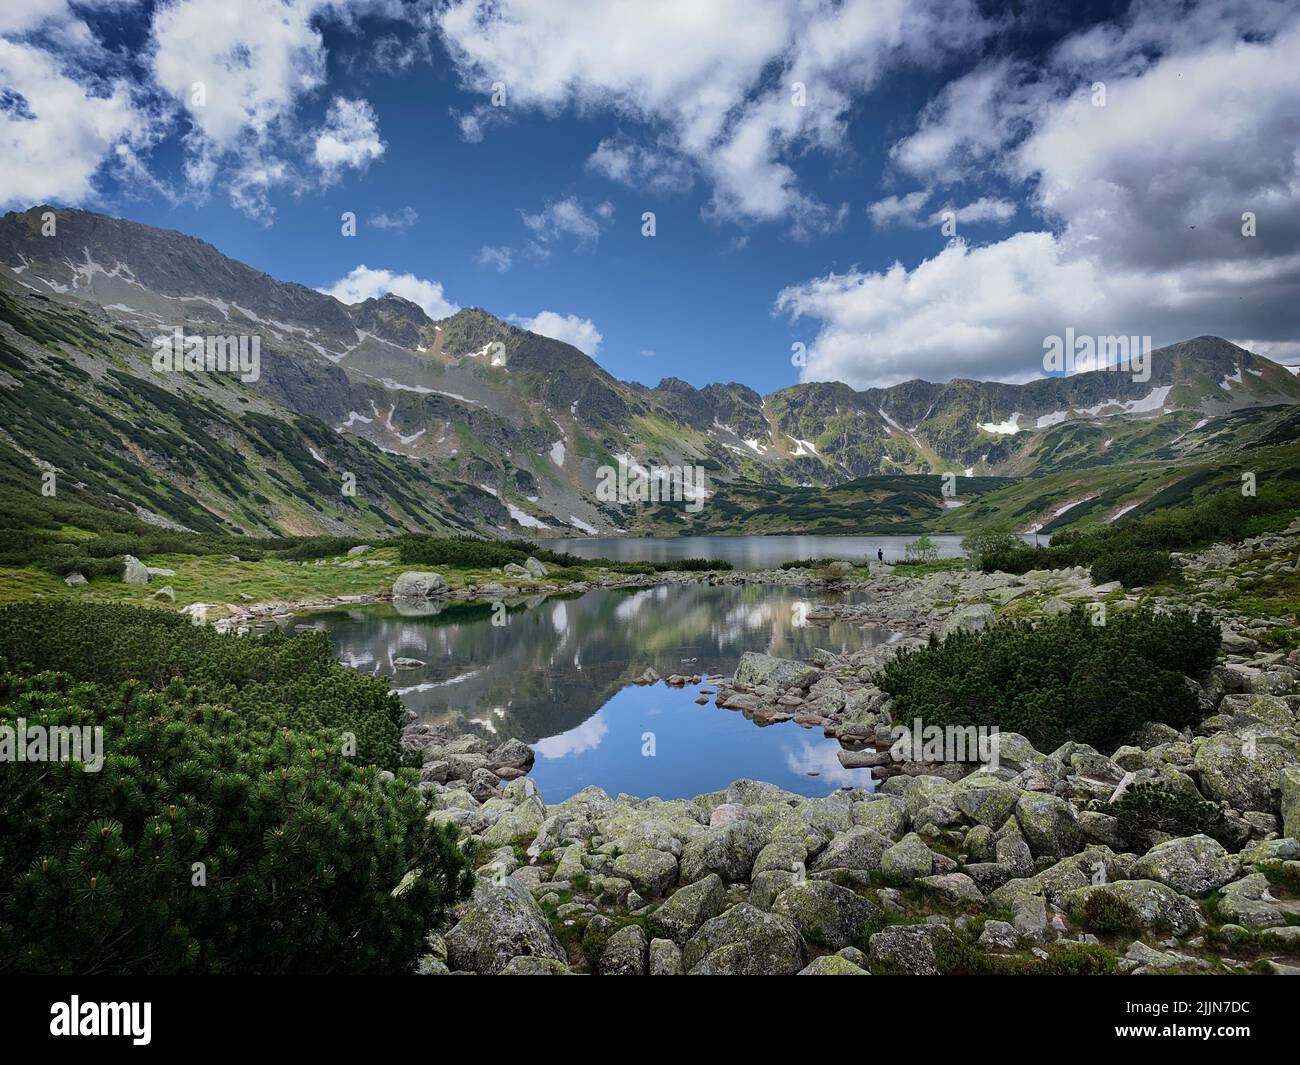 Landscape view of alpine lakes in Tatras mountains, Zakopane, Poland Stock Photo